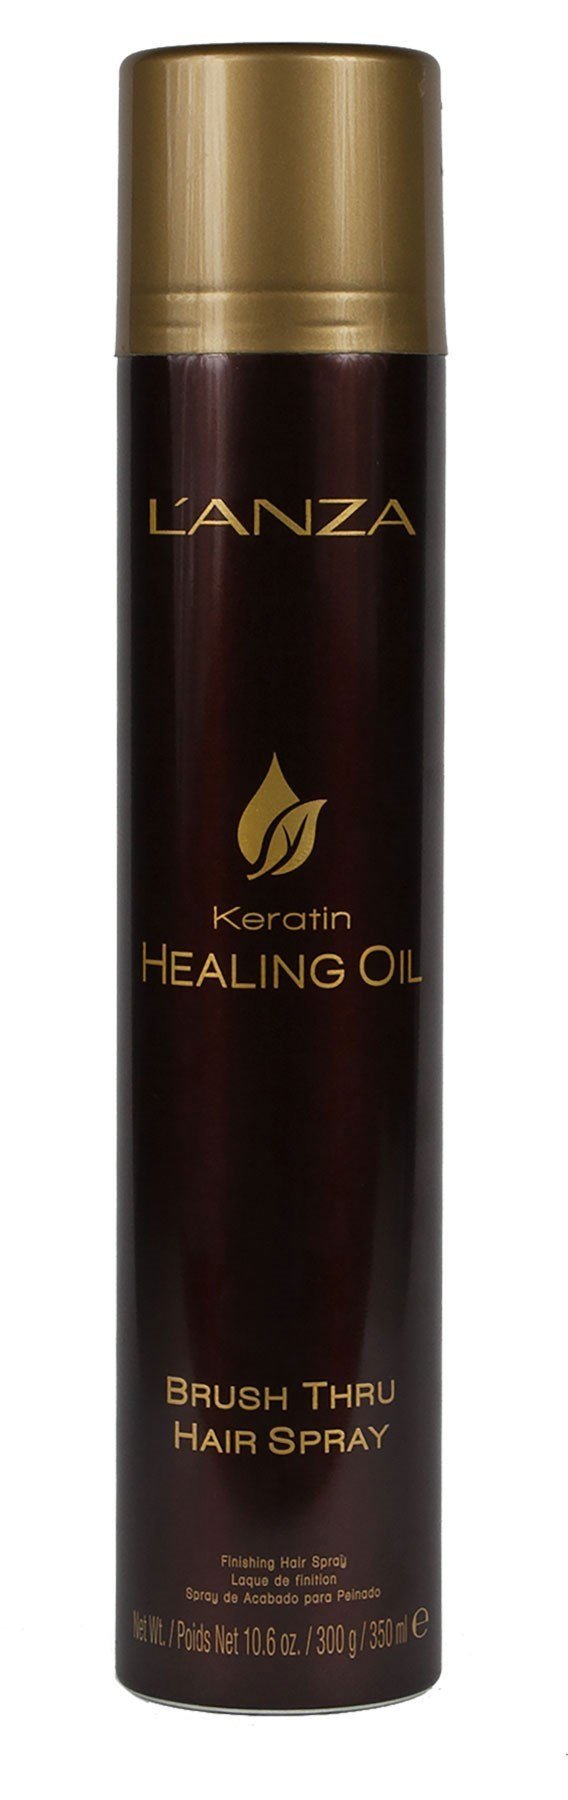 Lanza Keratin Healing Oil Brush Thru Hair Spray 350ml